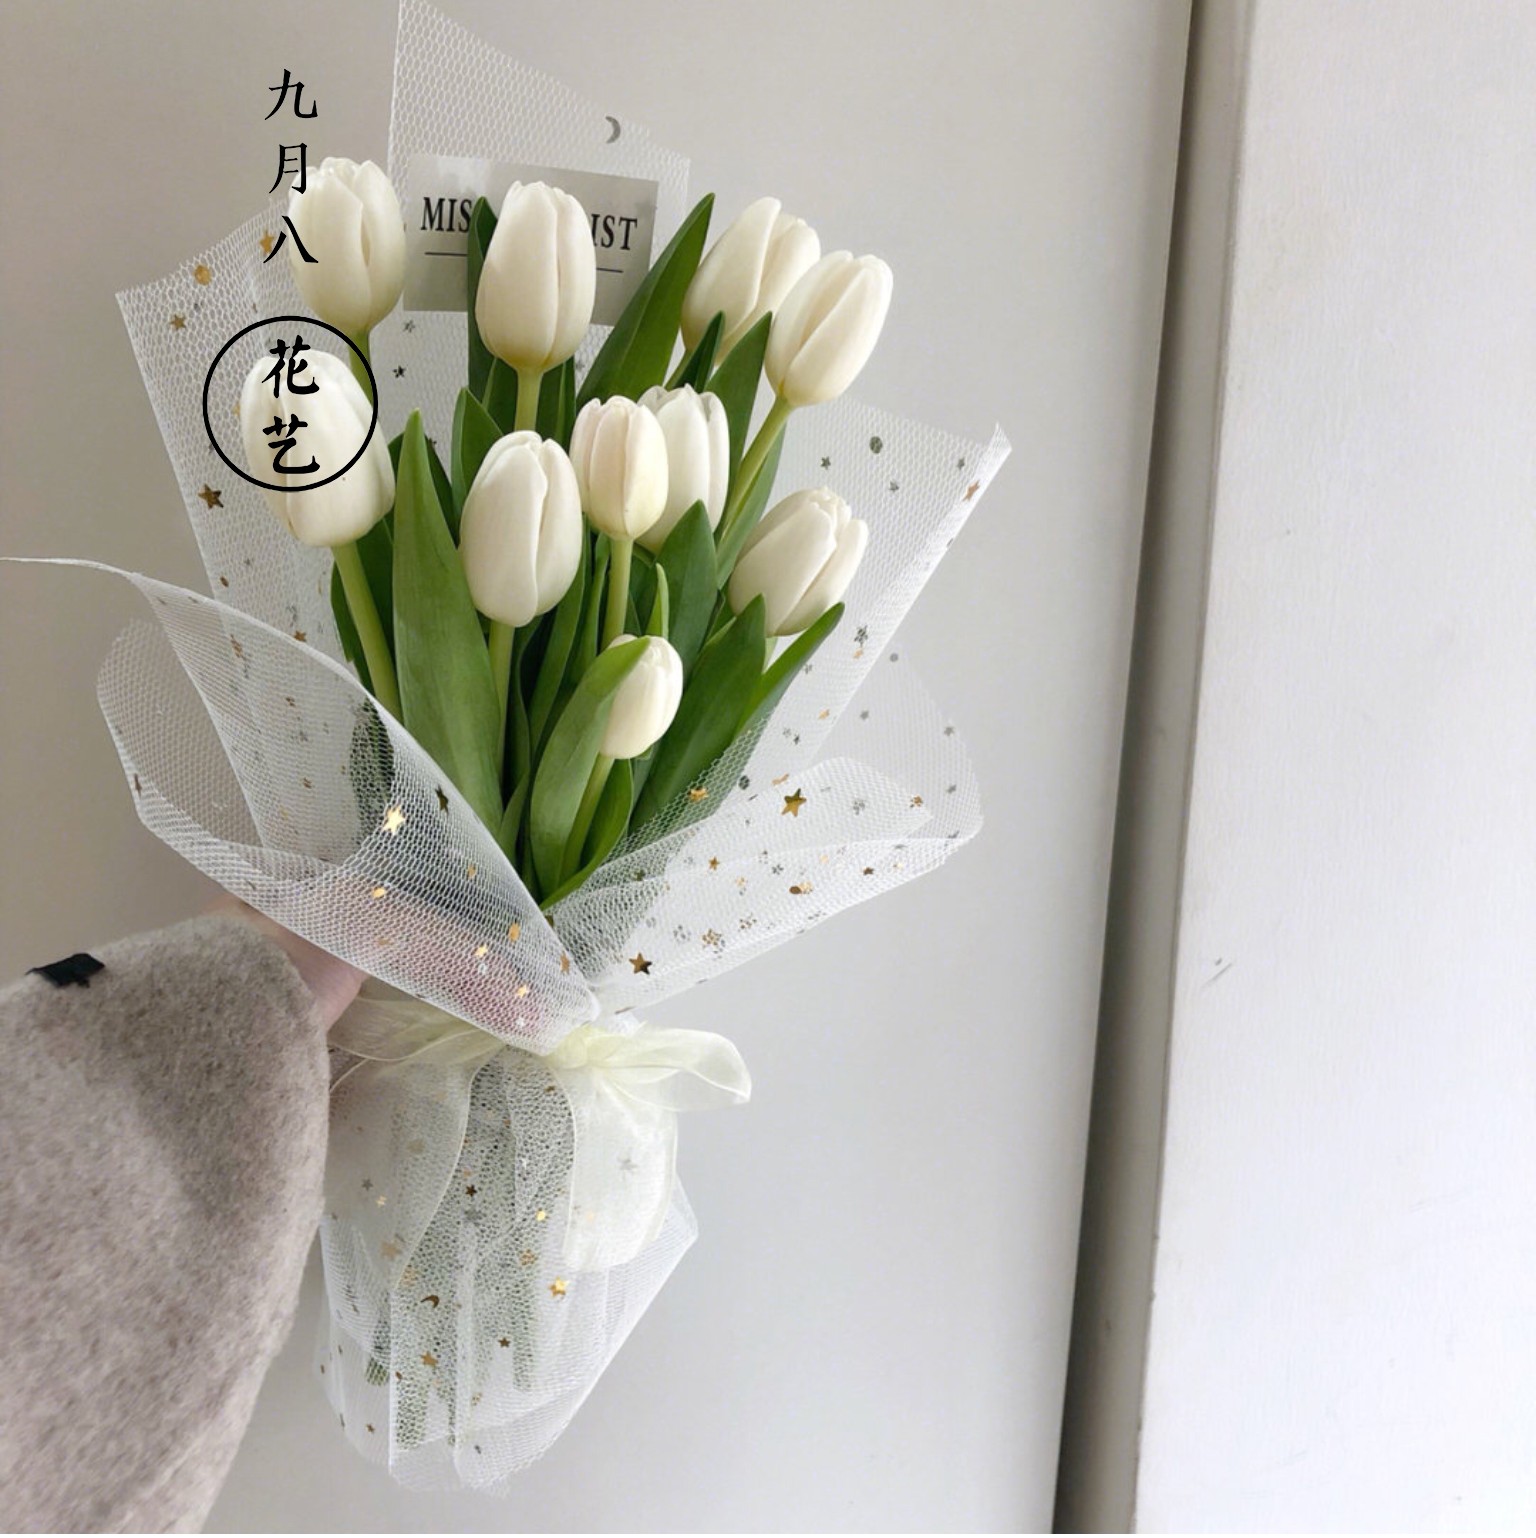 母亲节郁金香花优质花束无锡鲜花同城速递送女友朋友生日祝福送花